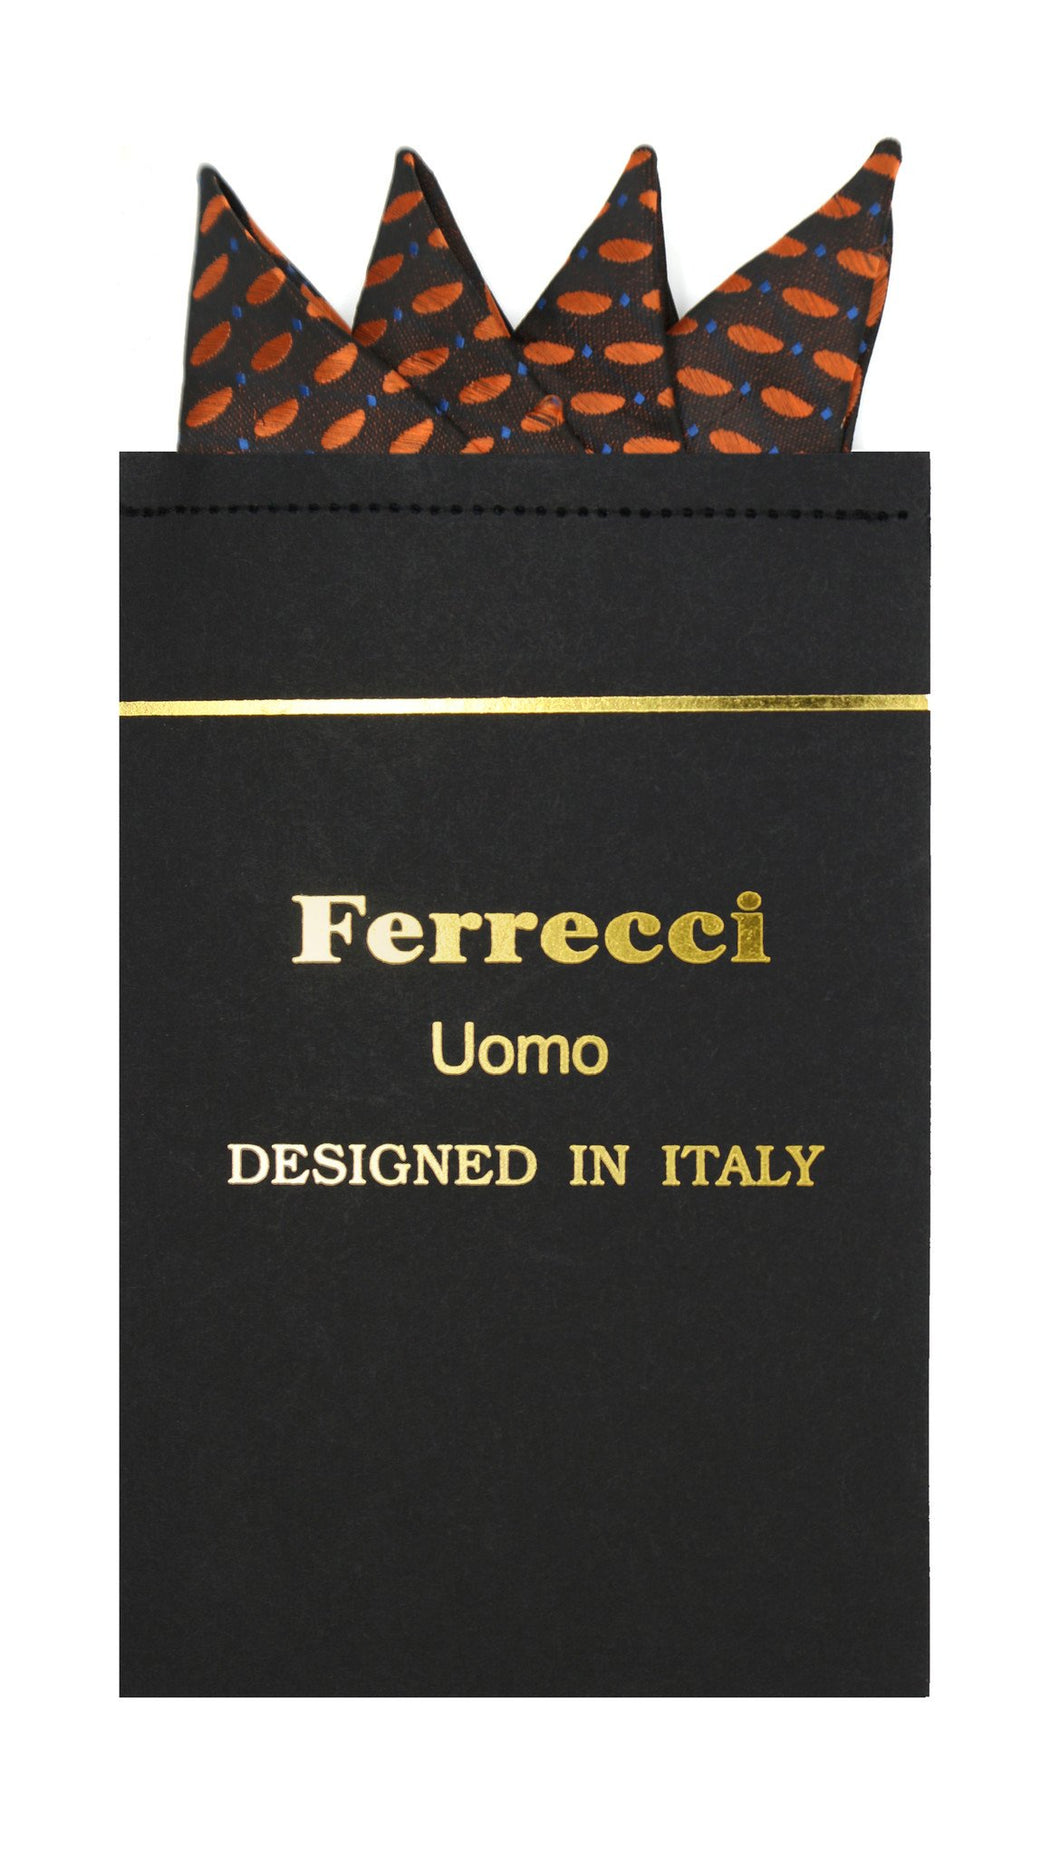 Pre-Folded Microfiber Rust Polkadot Handkerchief Pocket Square - Ferrecci USA 